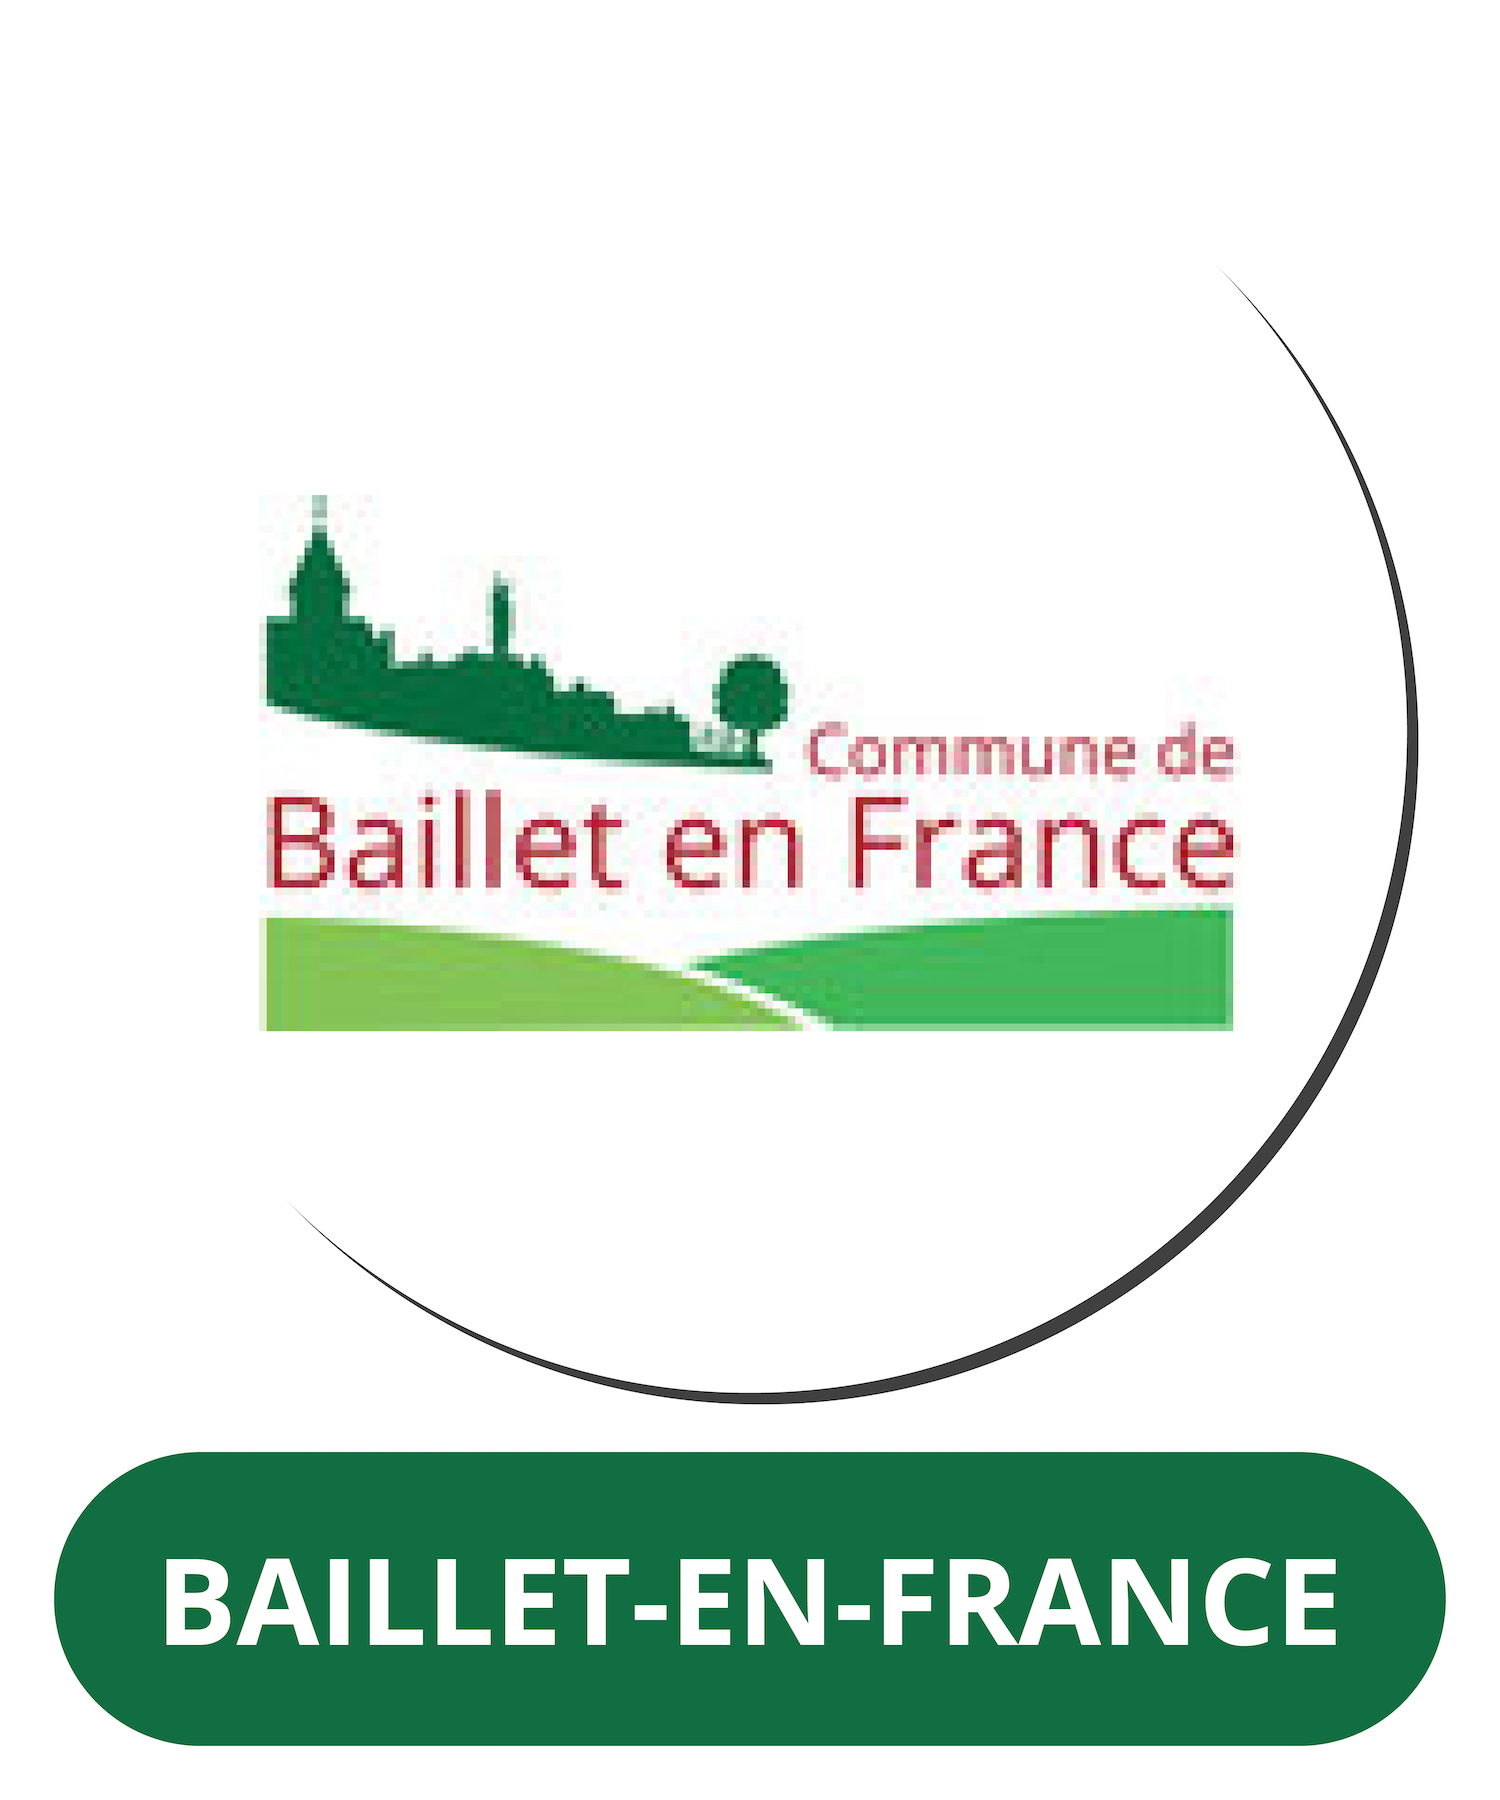 Baillet-en-France